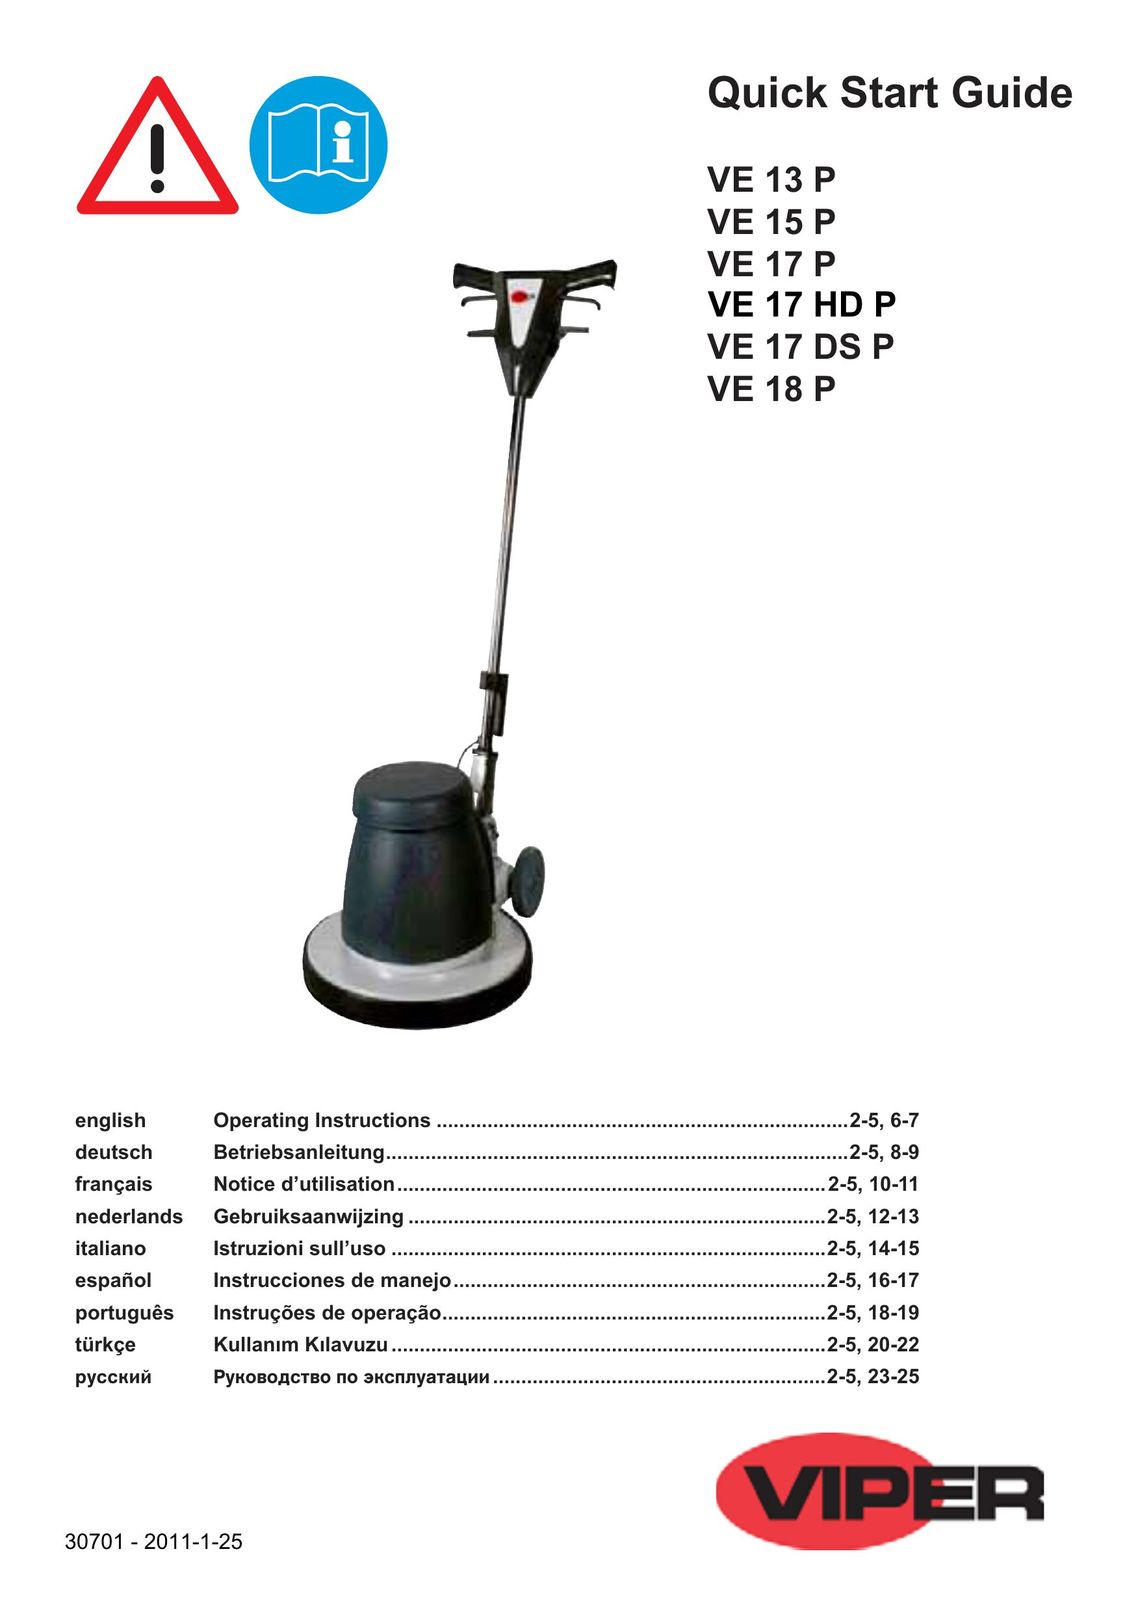 Viper VE 17 P Carpet Cleaner User Manual